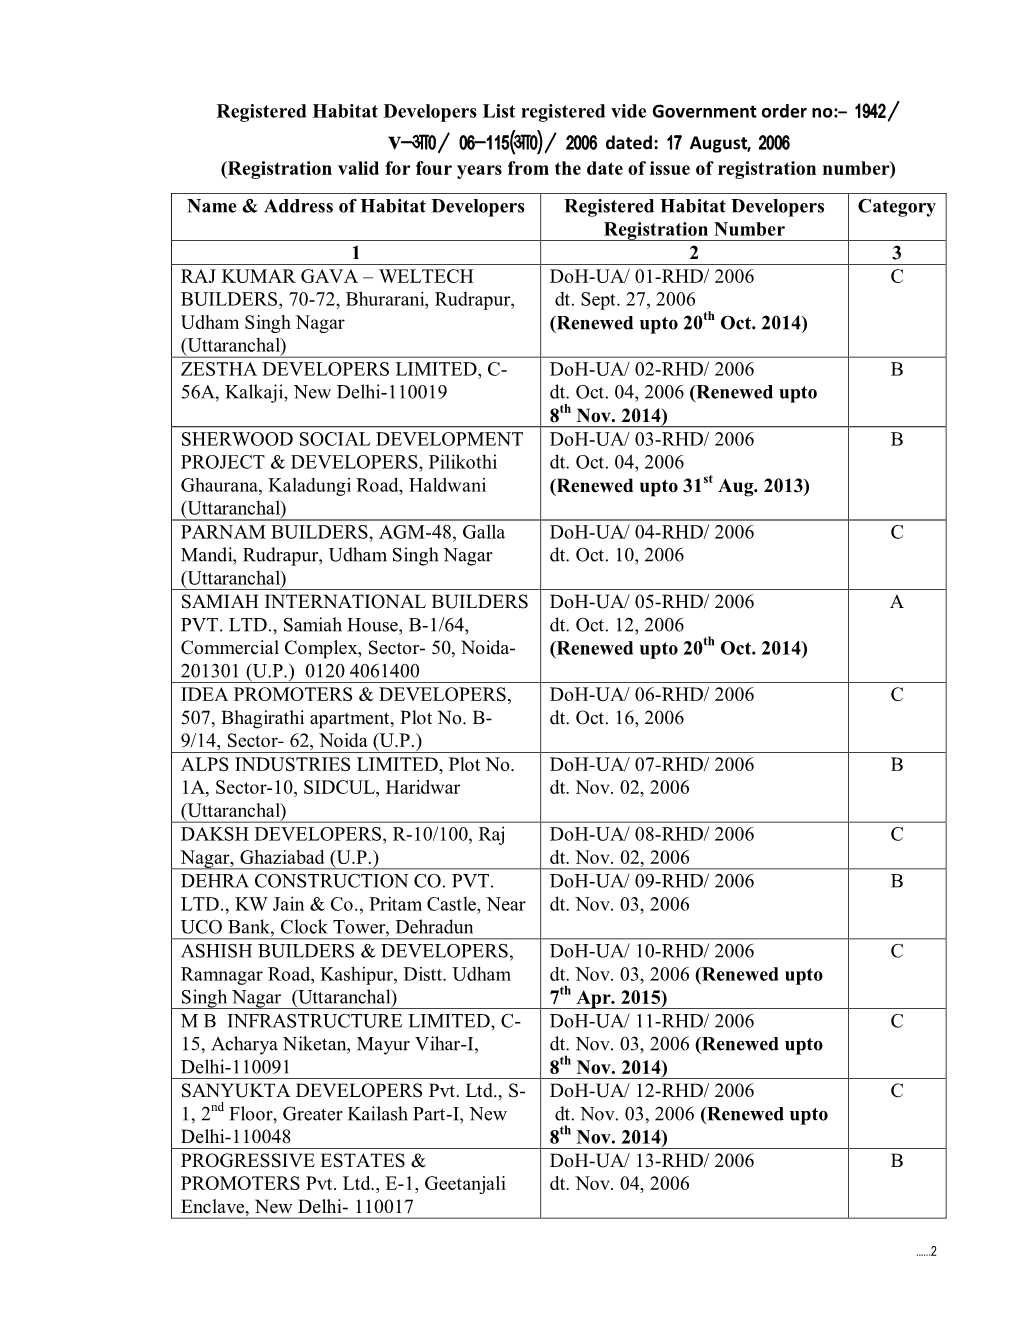 List of Registered Habitat Developers in the State of Uttarakhand